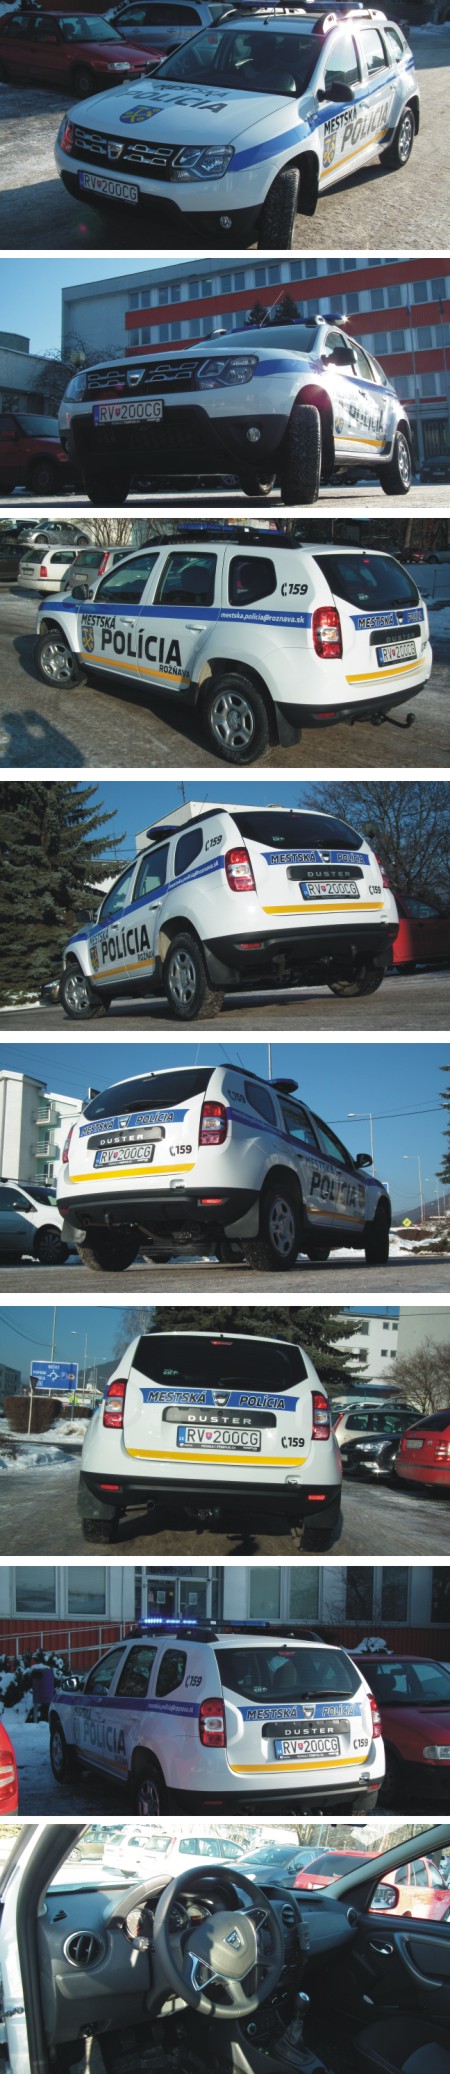 Mestská polícia Rožňava Dacia Duster